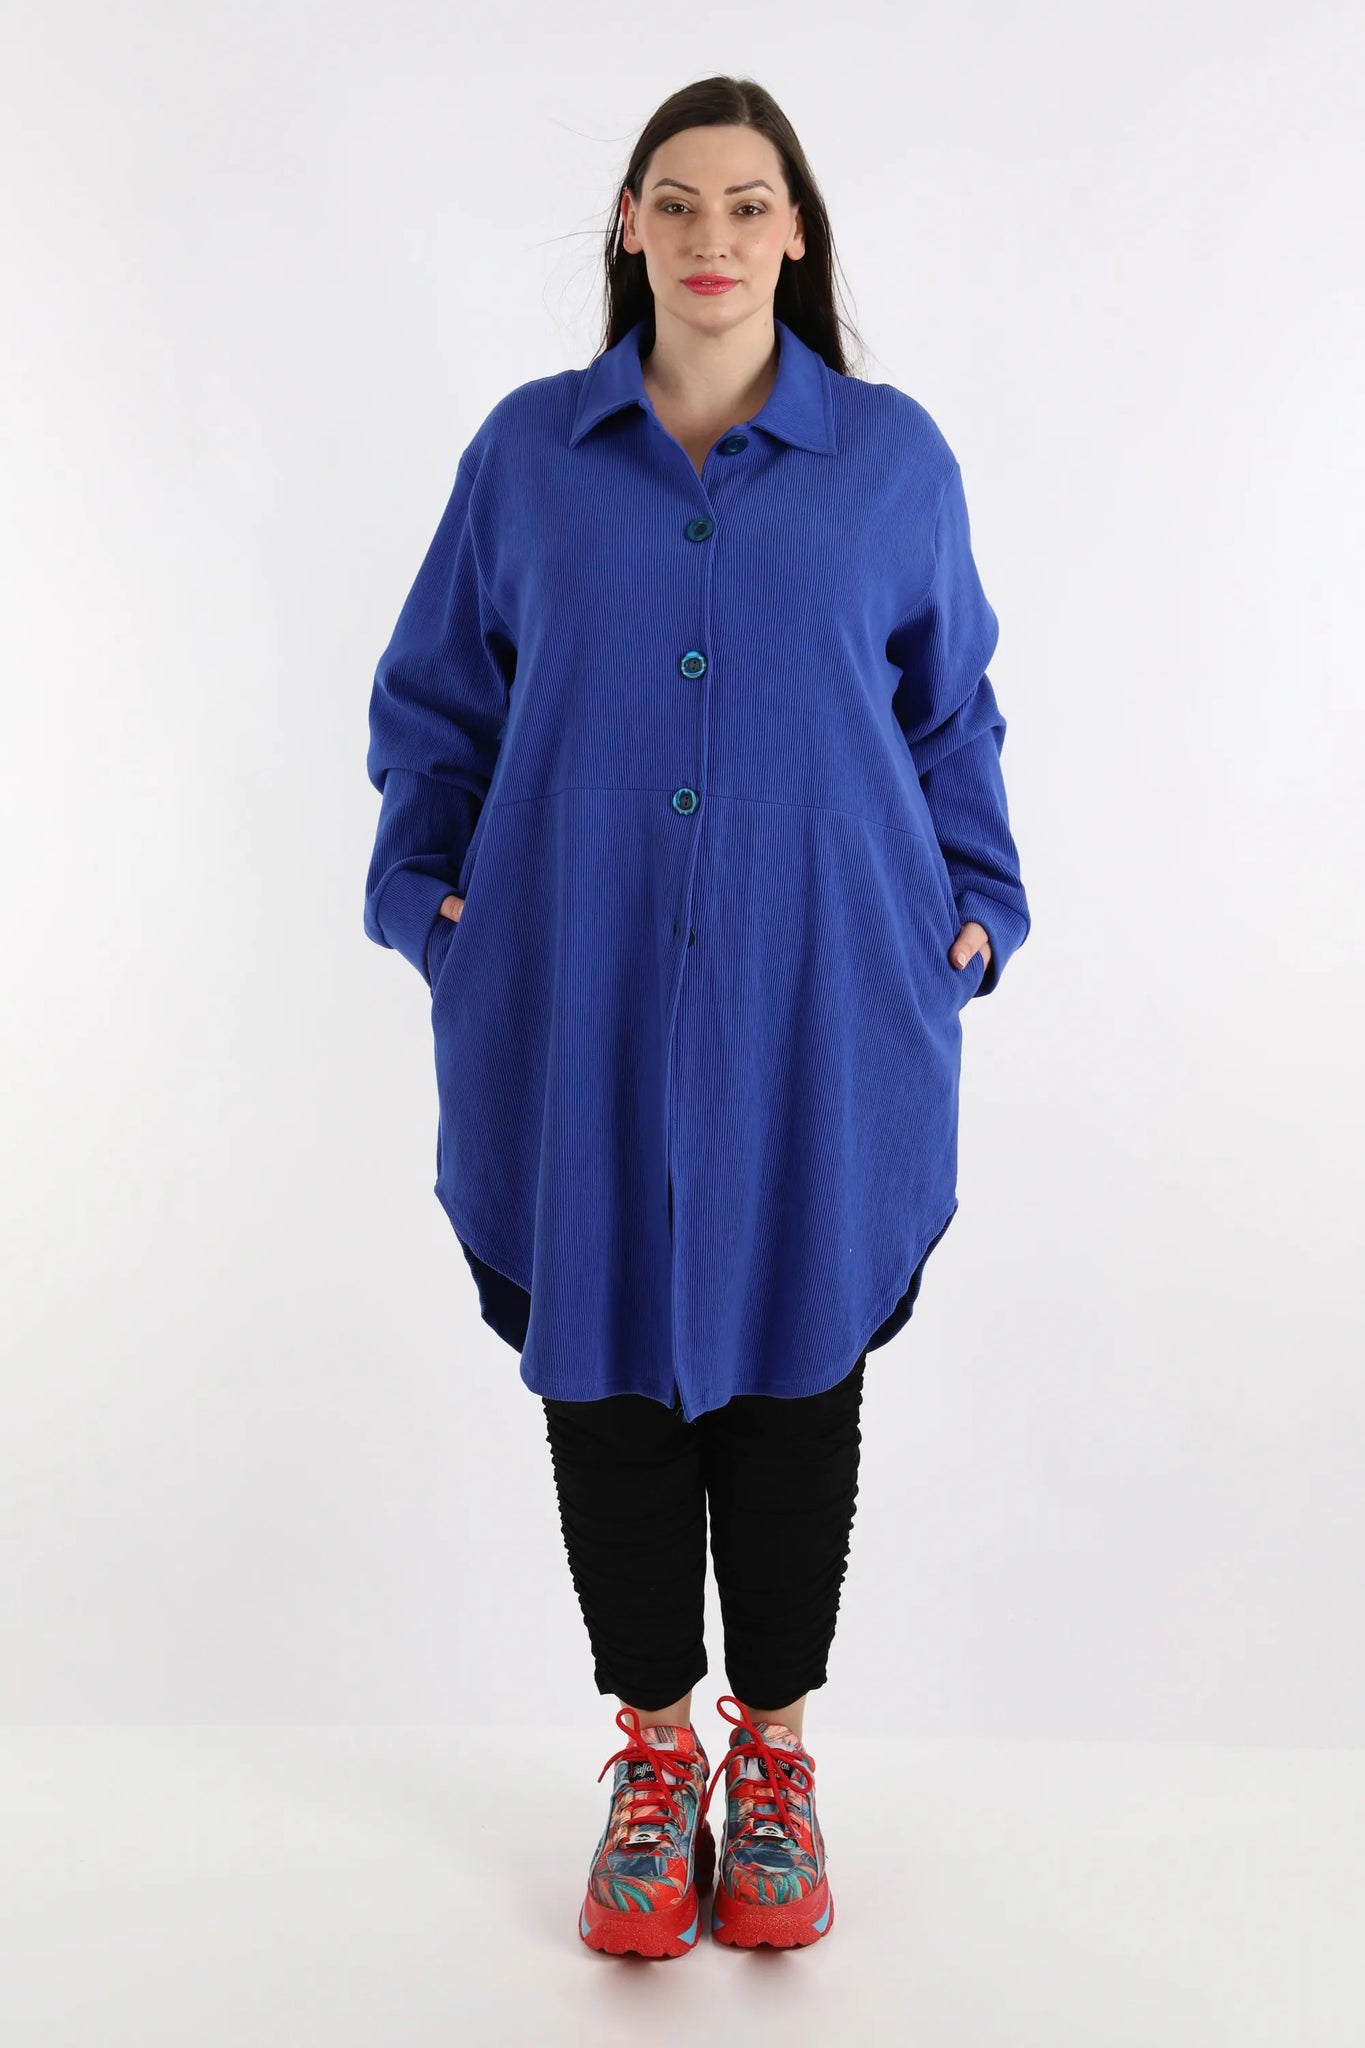 Bluse von AKH Fashion aus Baumwolle in gerundeter Form, 1252.06881, Blau, Schick, Modern